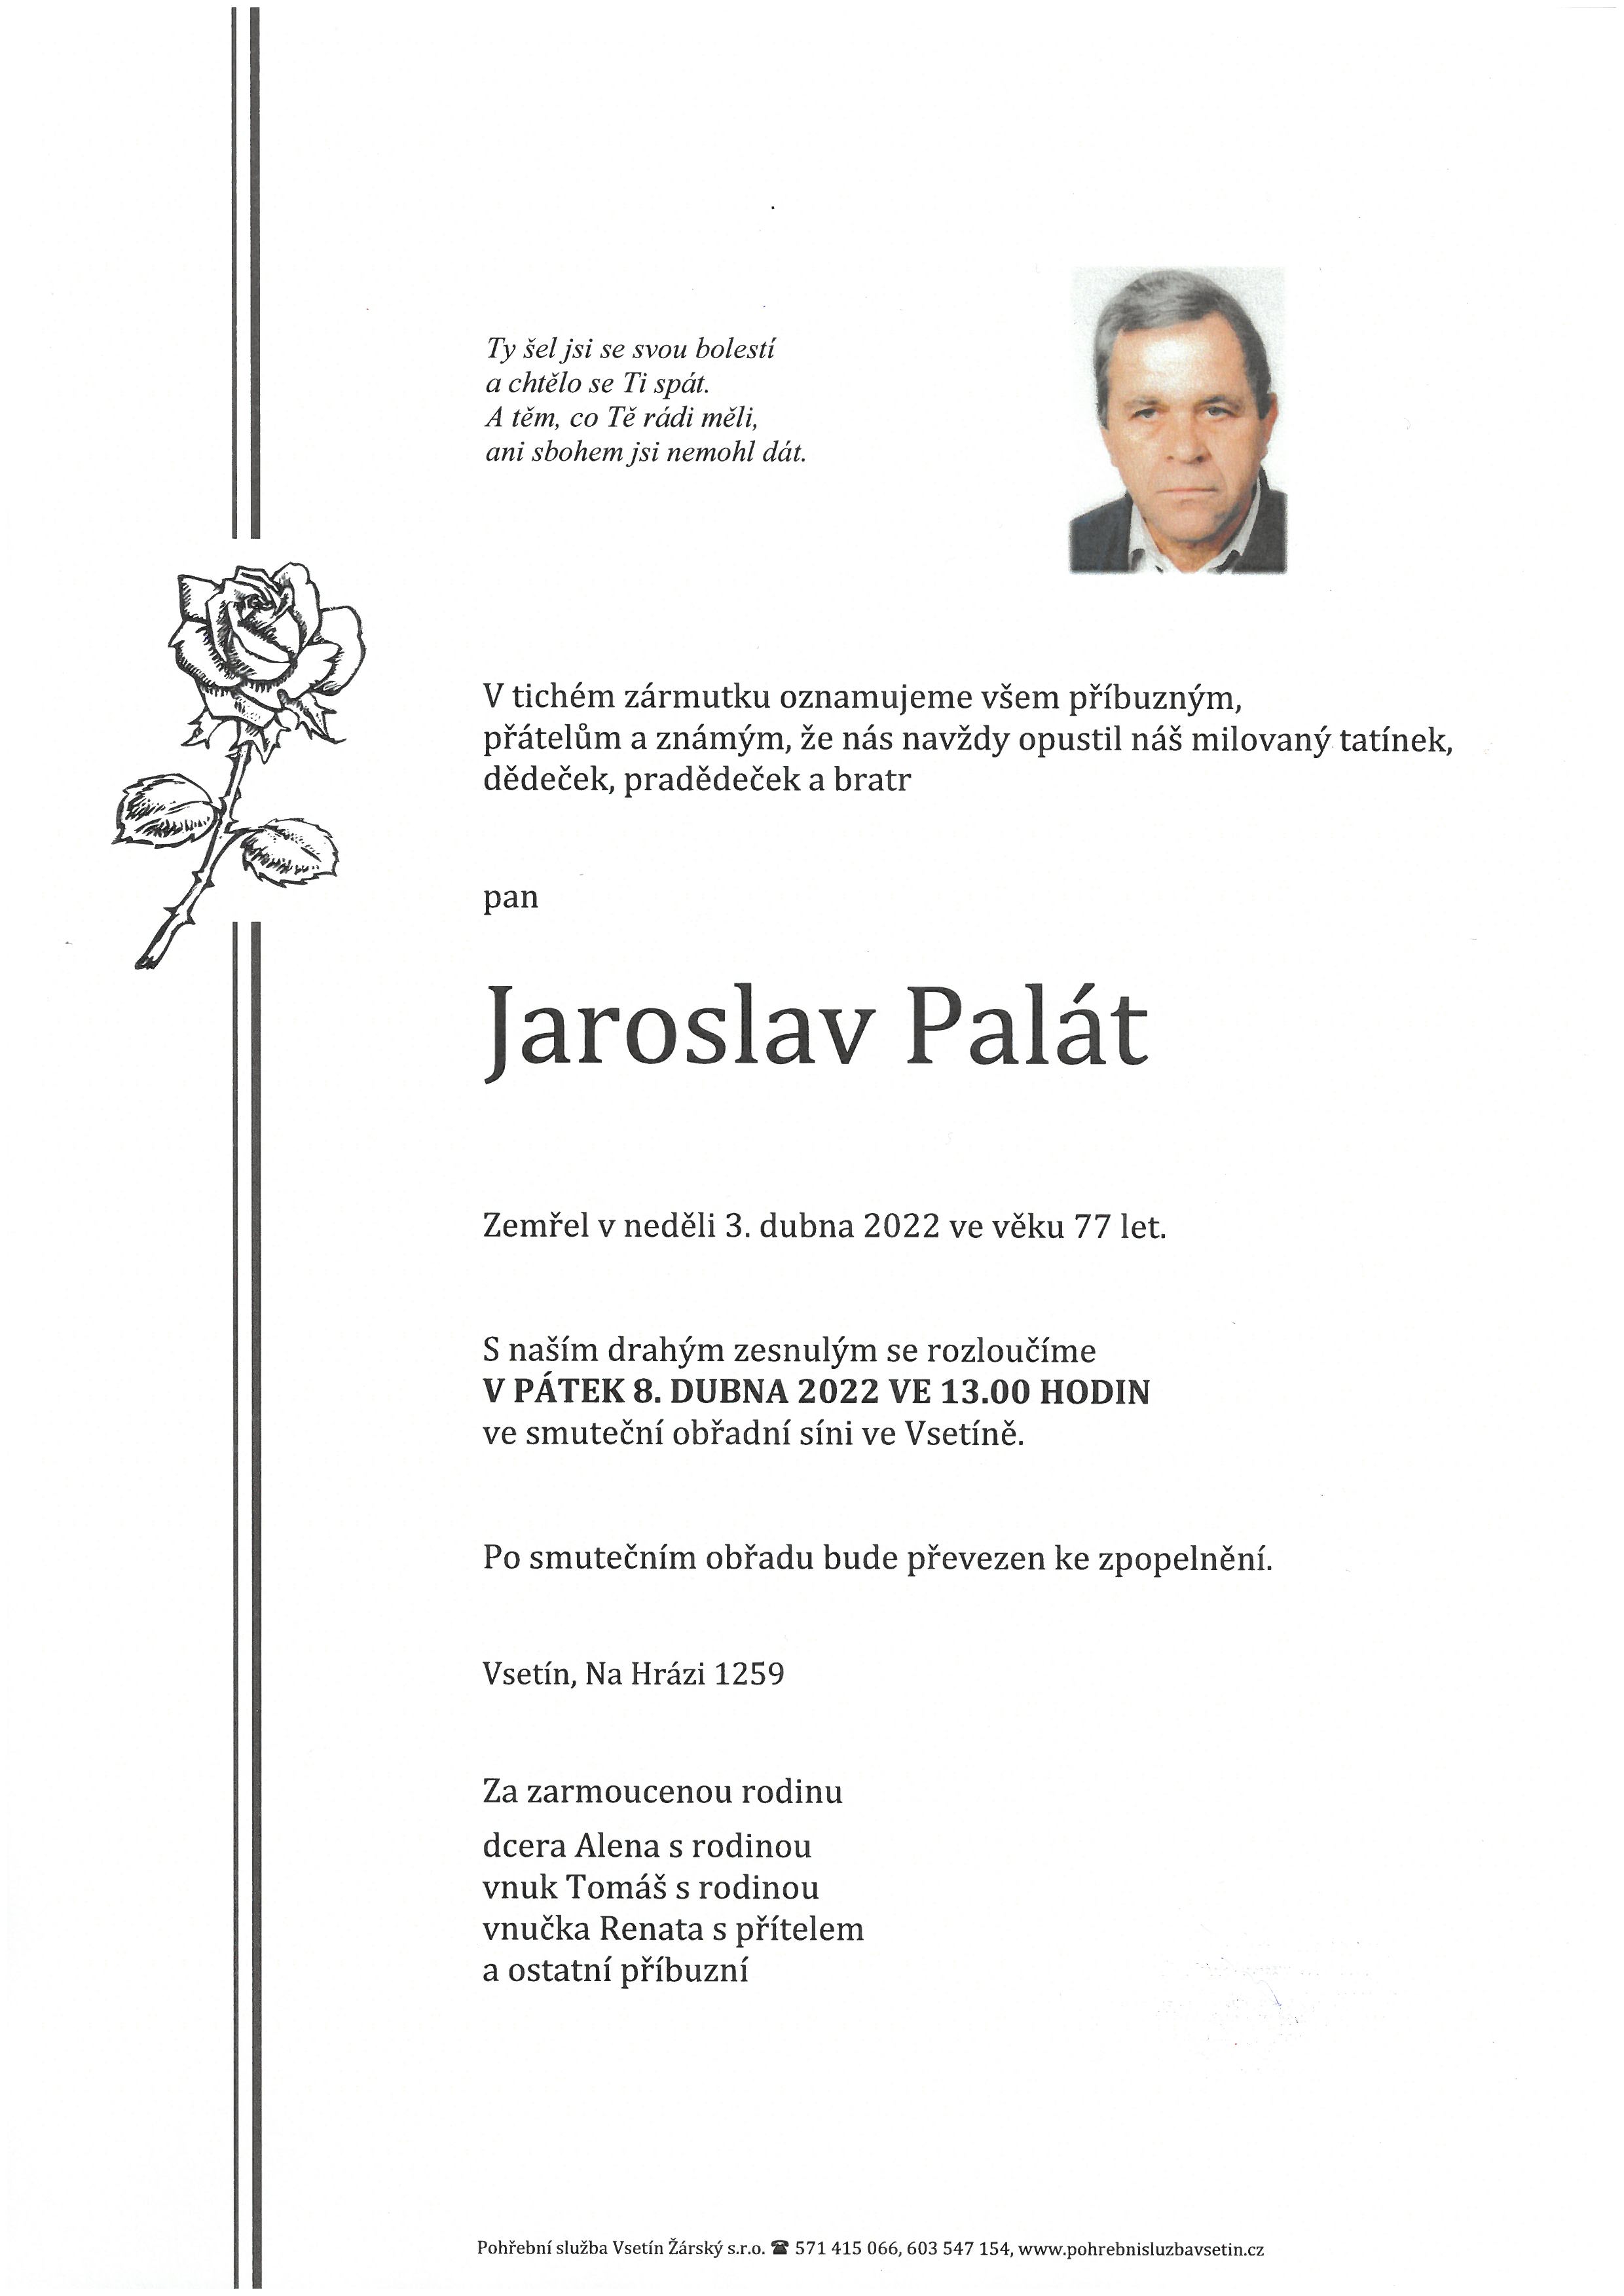 Jaroslav Palát